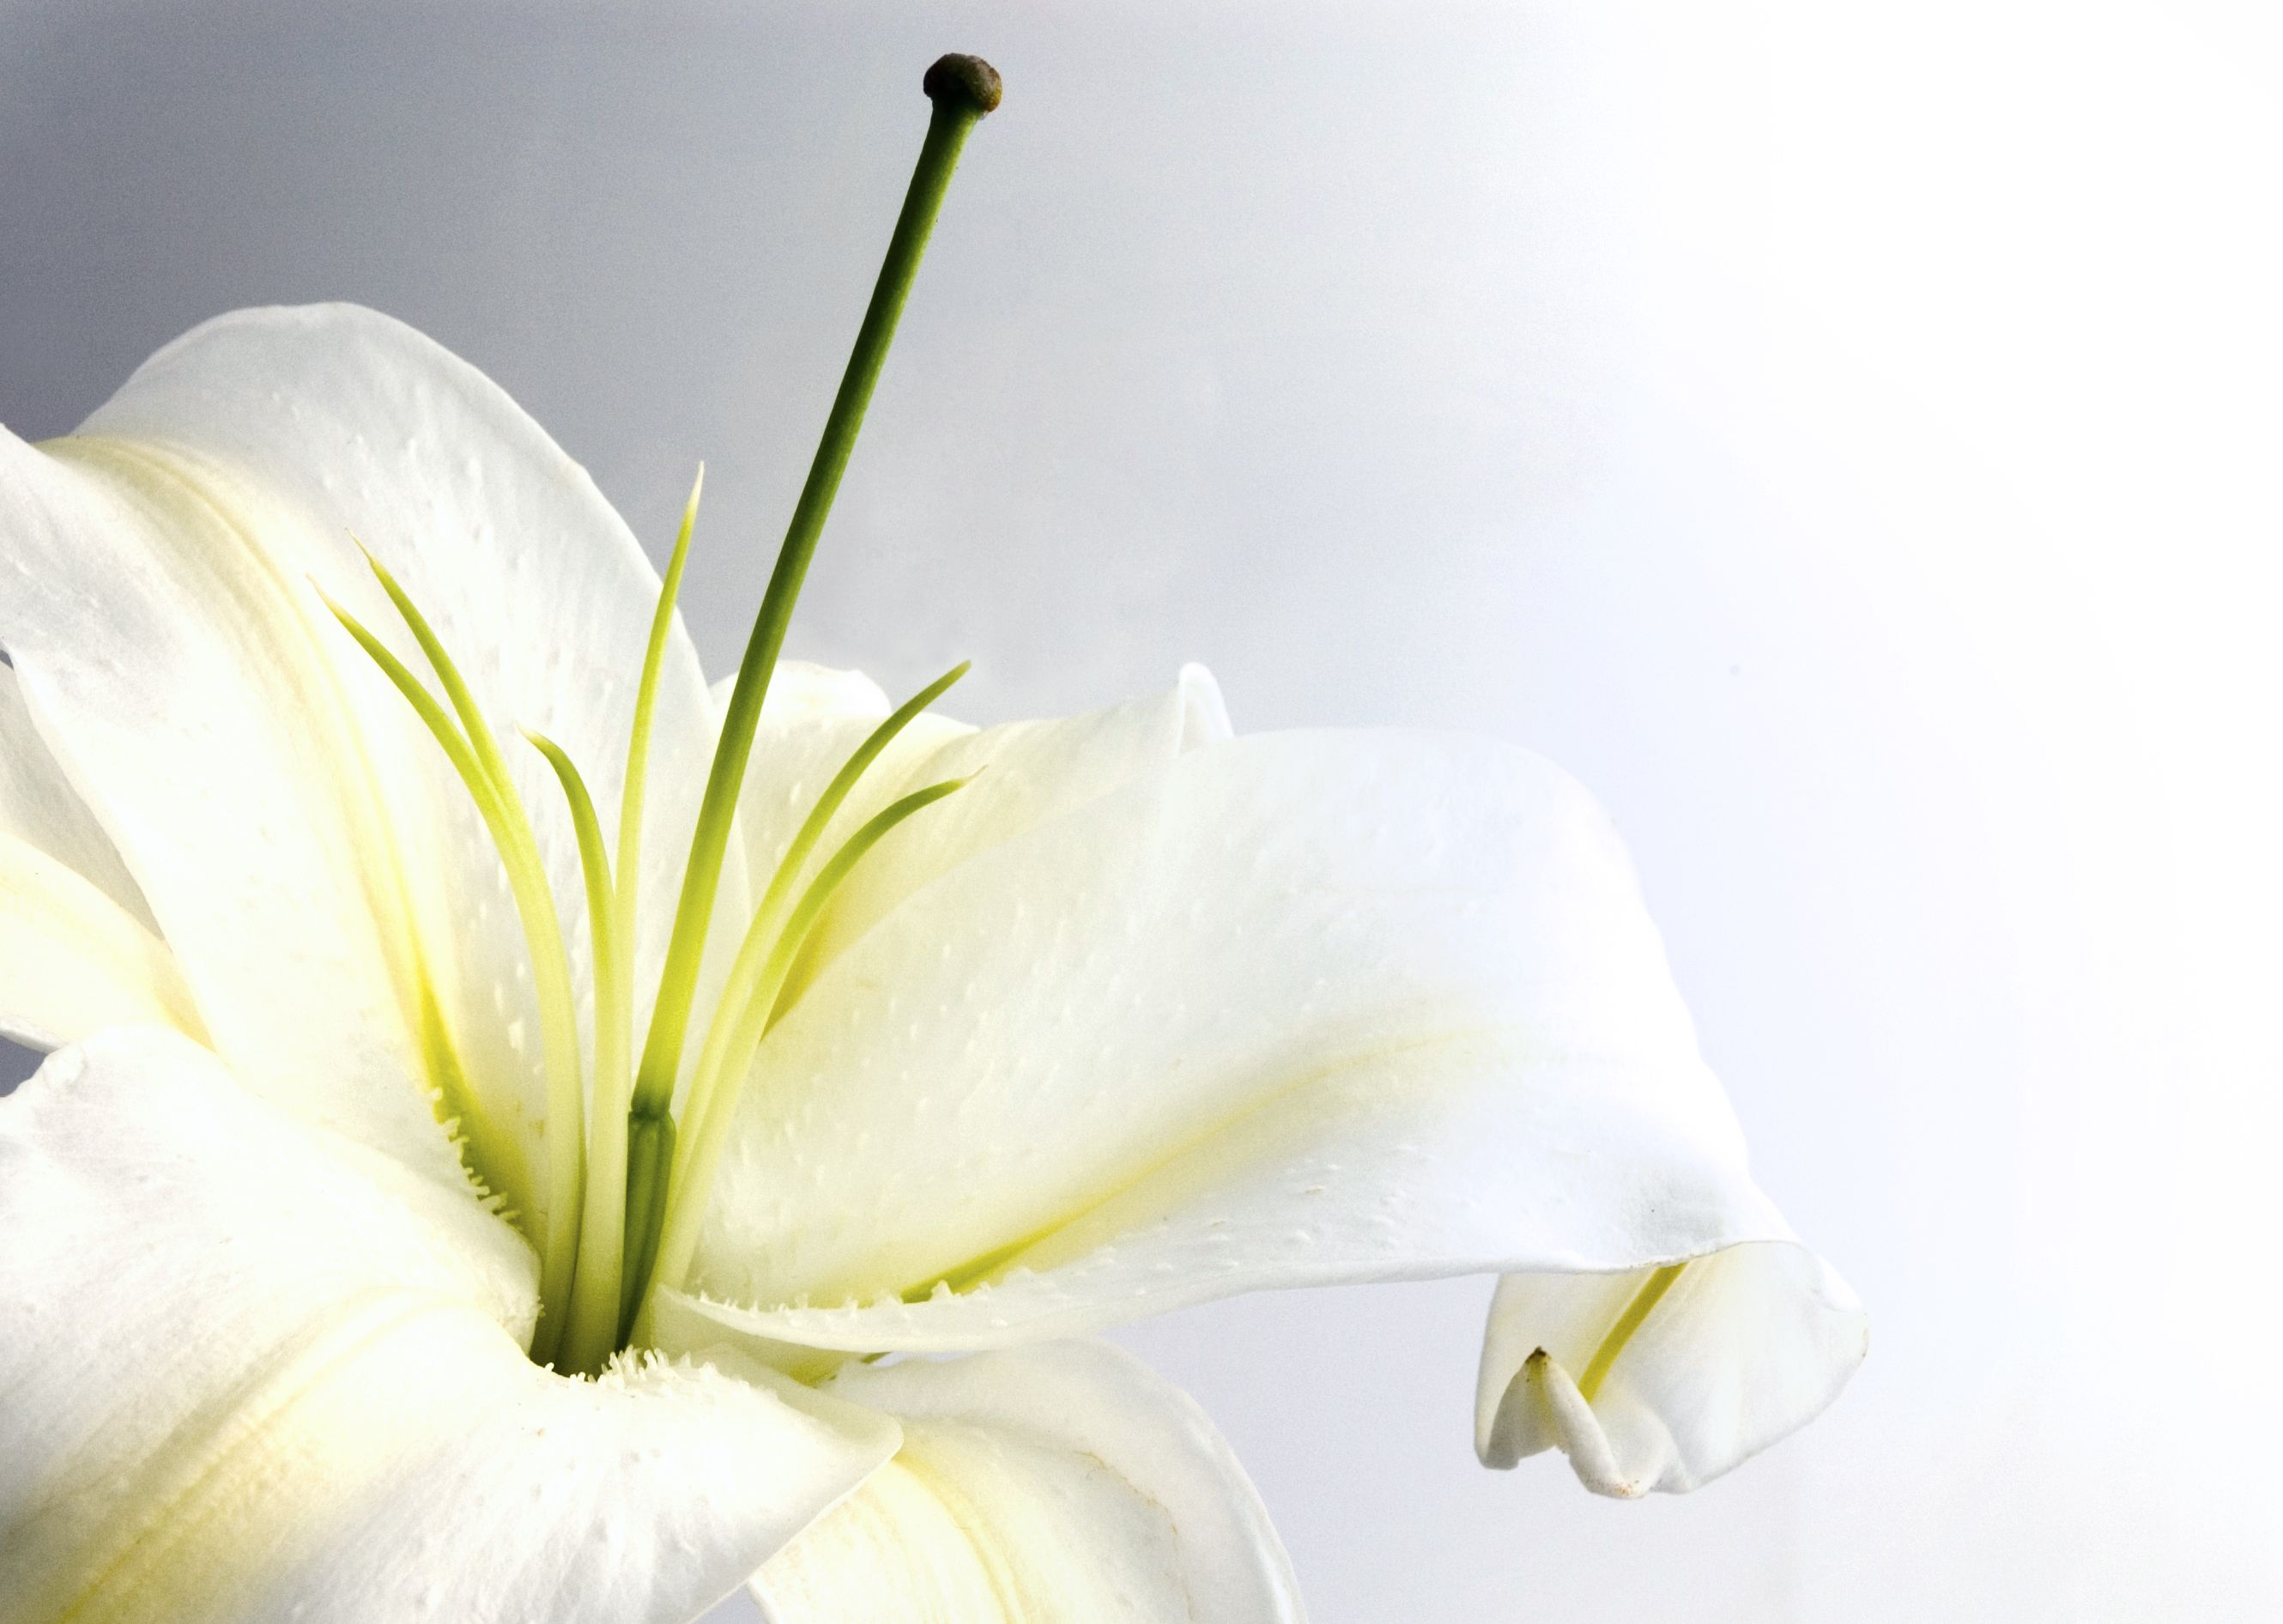 Làm thế nào để tạo nên một bông hoa Lily trắng tuyệt đẹp? Hãy cùng đến với chúng tôi để khám phá sự tinh tế và độc đáo của loài hoa này. Hình ảnh hoa Lily trắng đong đầy sức sống sẽ khiến bạn thích thú và cảm nhận được một niềm vui mới.